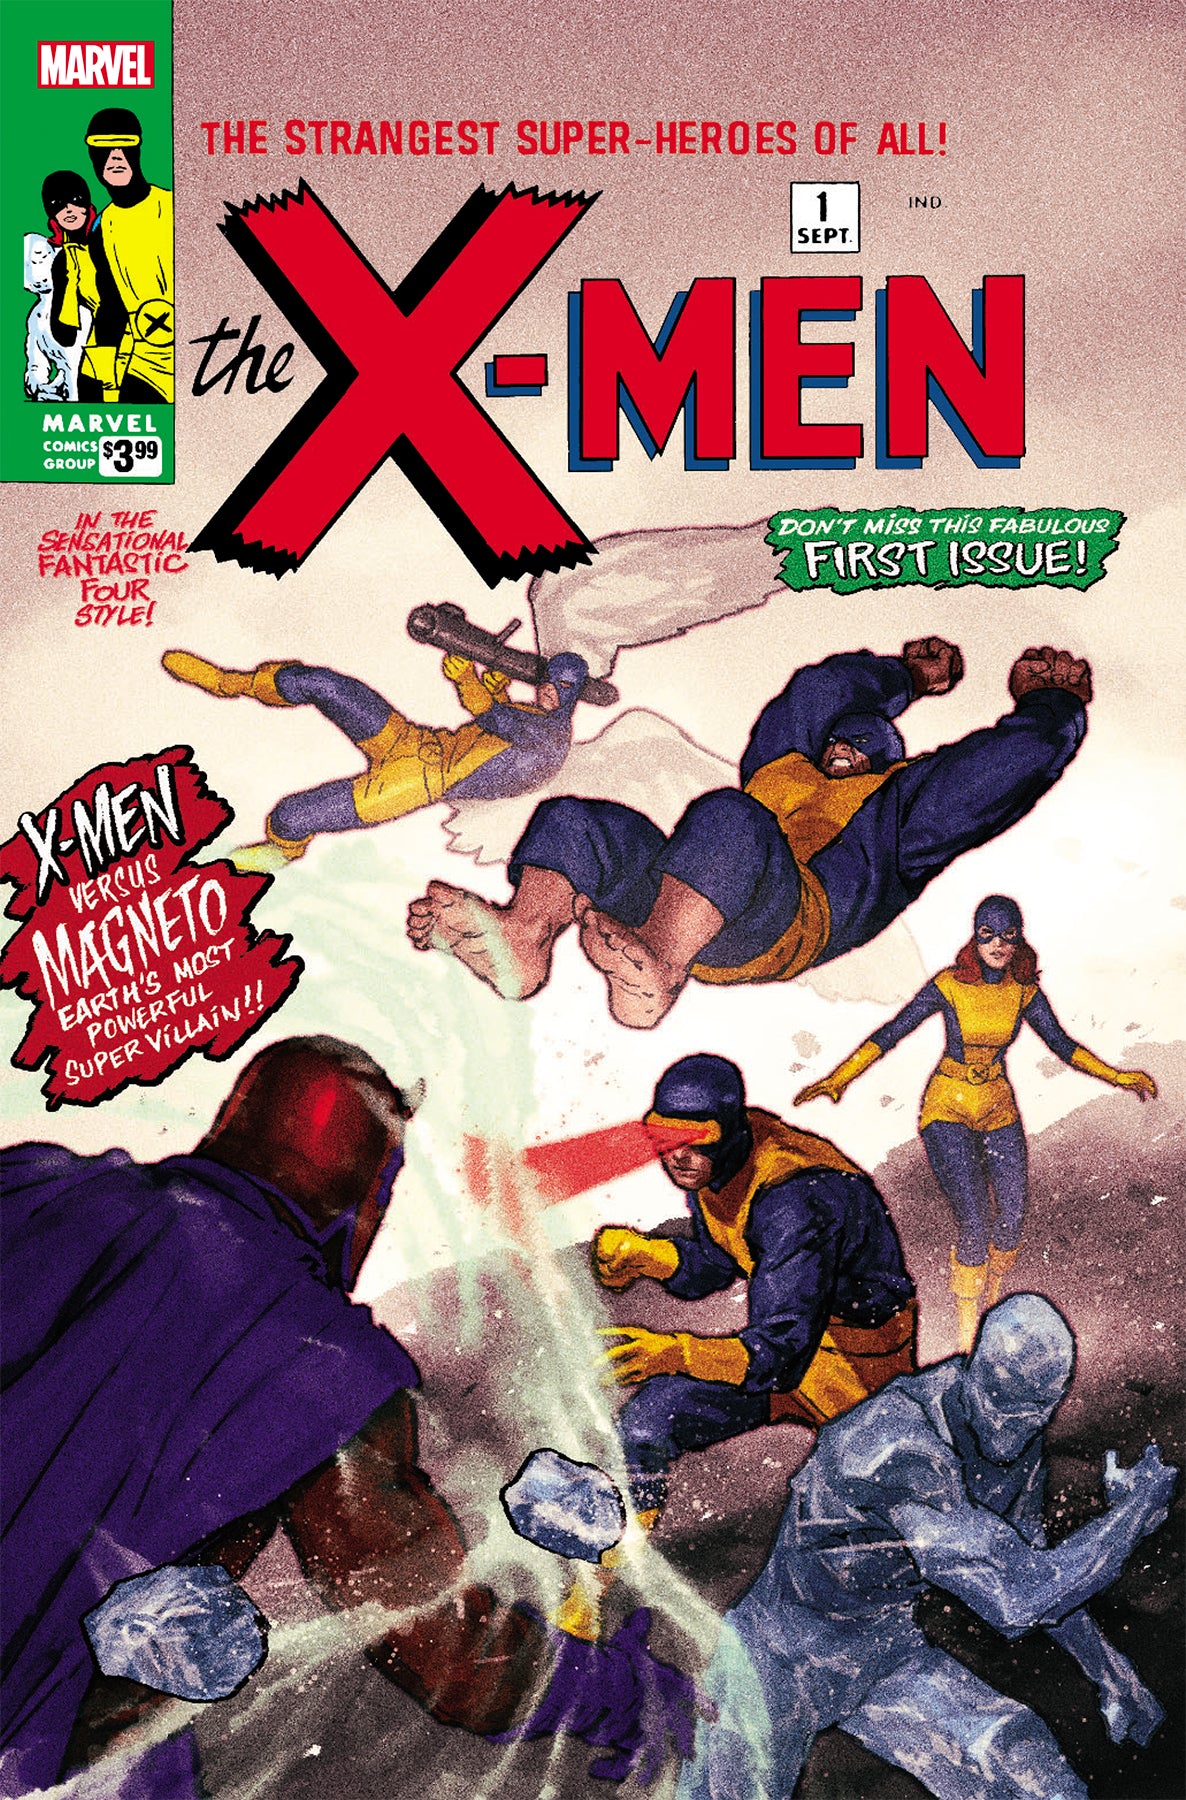 X-MEN #1 FACSIMILE EDITION UNKNOWN COMICS PAREL EXCLUSIVE (07/10/2019)